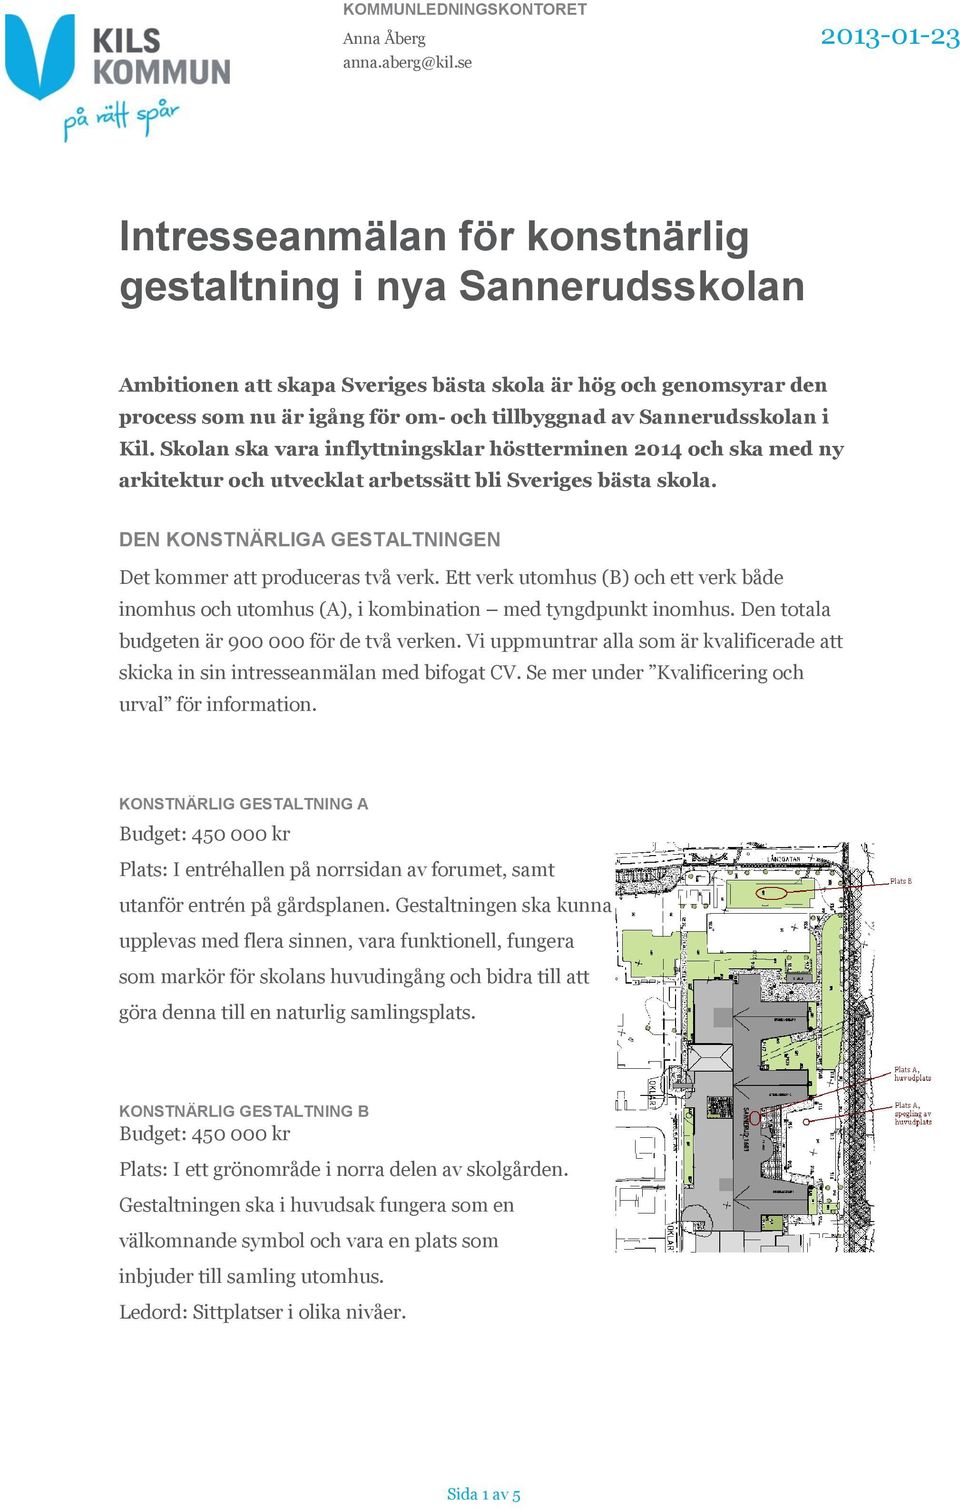 Sannerudsskolan i Kil. Skolan ska vara inflyttningsklar höstterminen 2014 och ska med ny arkitektur och utvecklat arbetssätt bli Sveriges bästa skola.